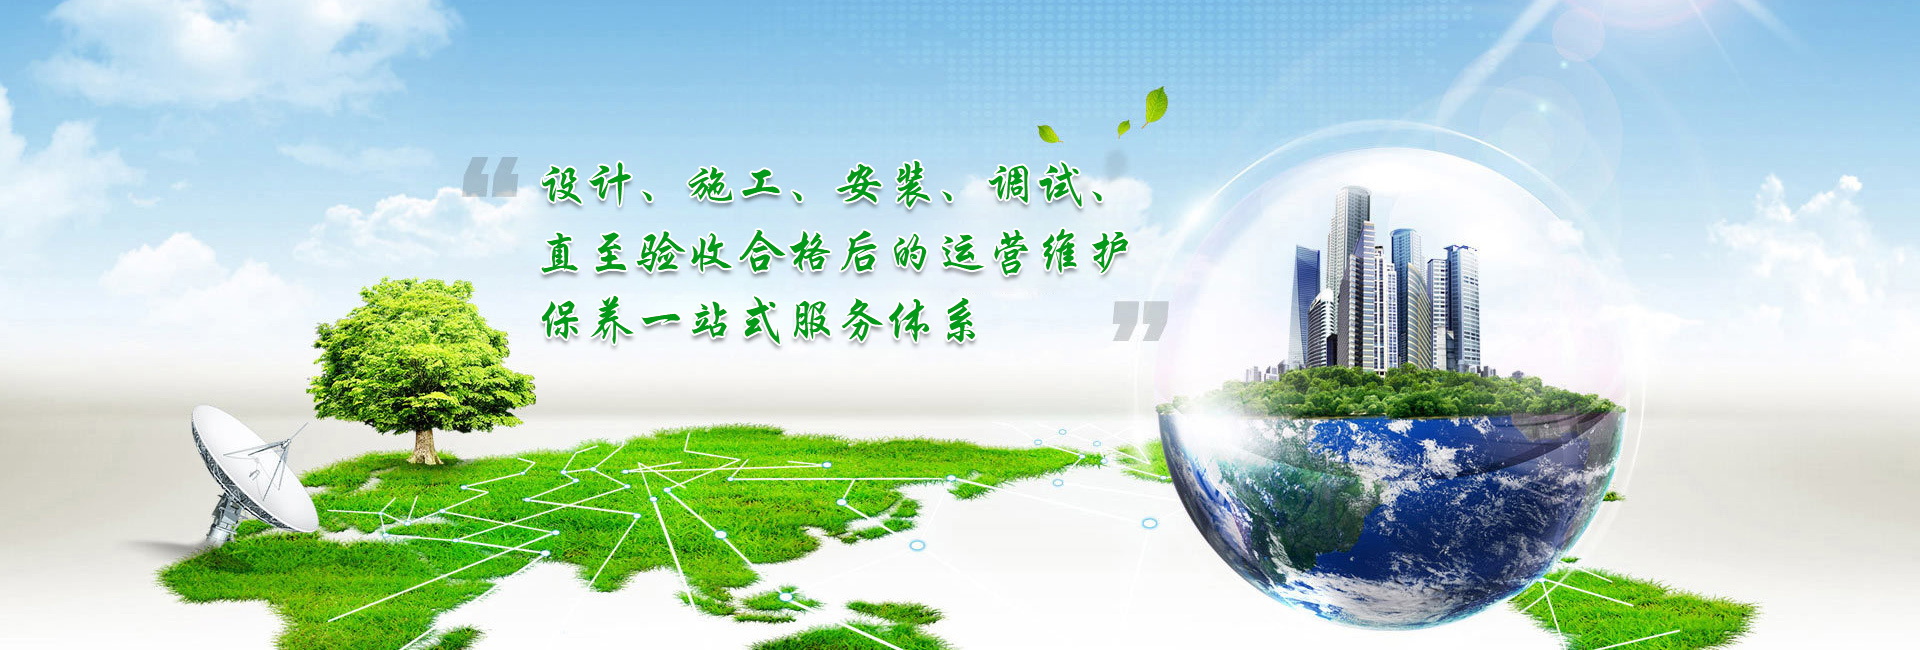 bwin·必赢(中国)唯一官方网站_image3921